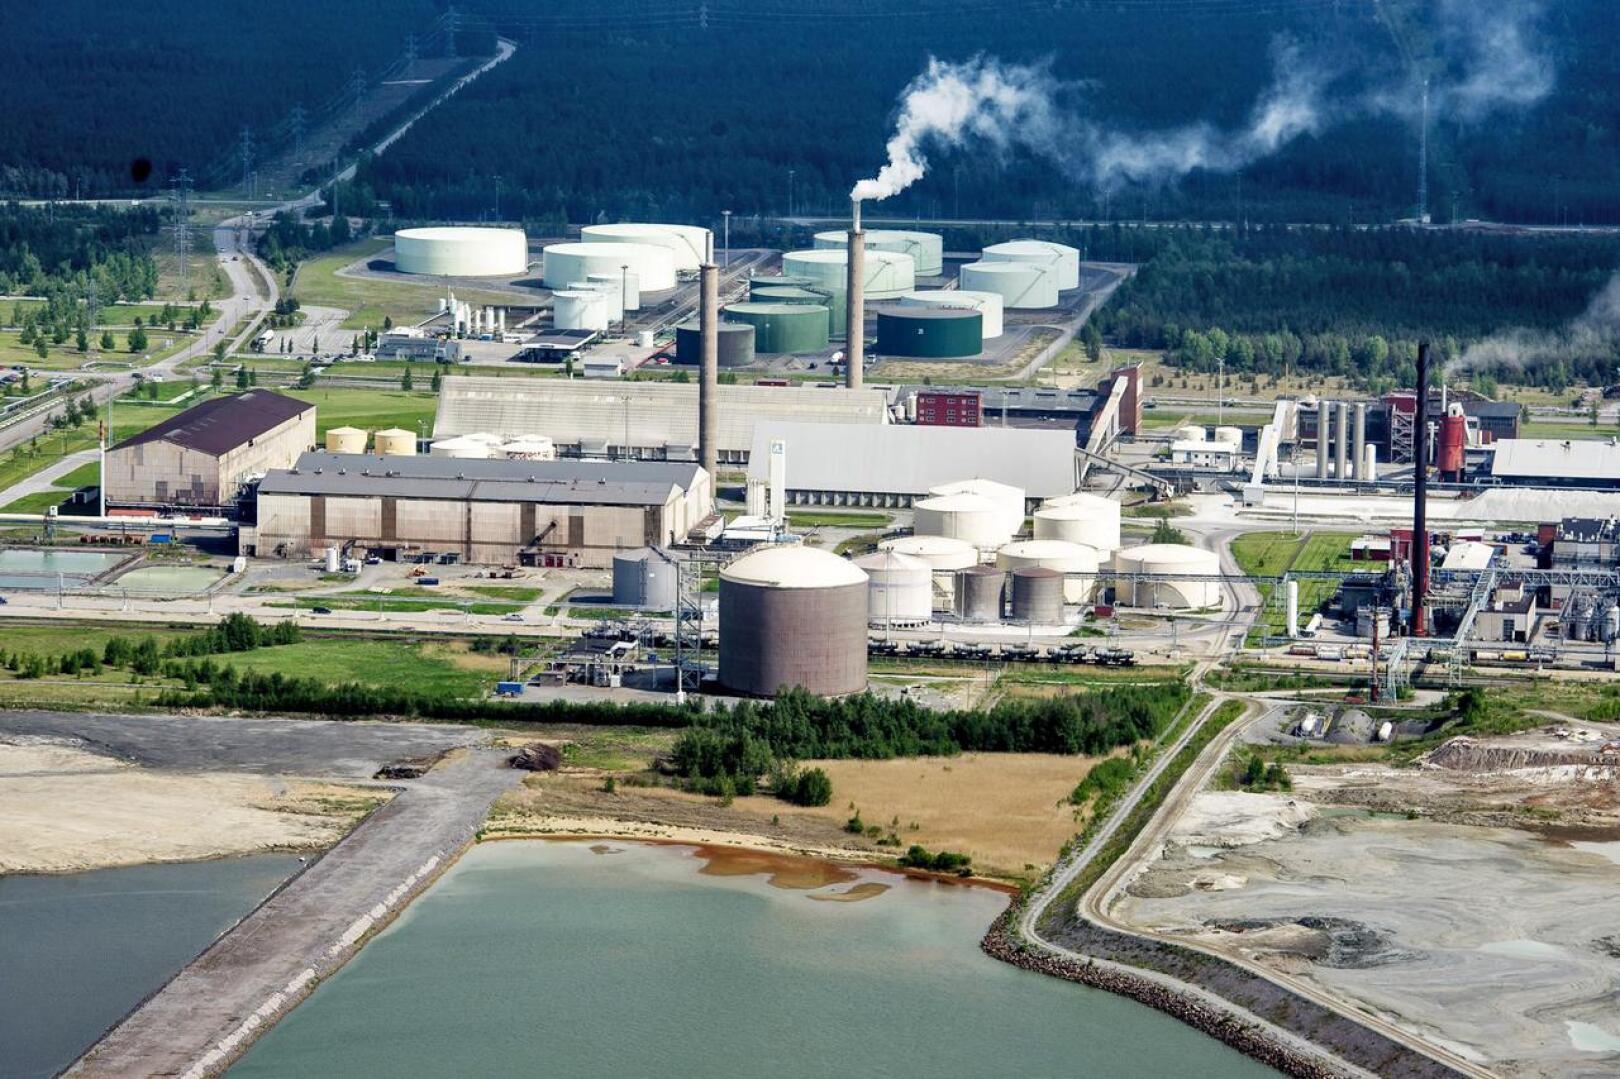 Näkymä Kokkolan suurteollisuusalueelle kesäkuussa 2014. Freeport Cobalt ja Boliden Kokkola kuuluvat Keski-Pohjanmaan merkittävimpiin yhteisöverojen maksajiin.